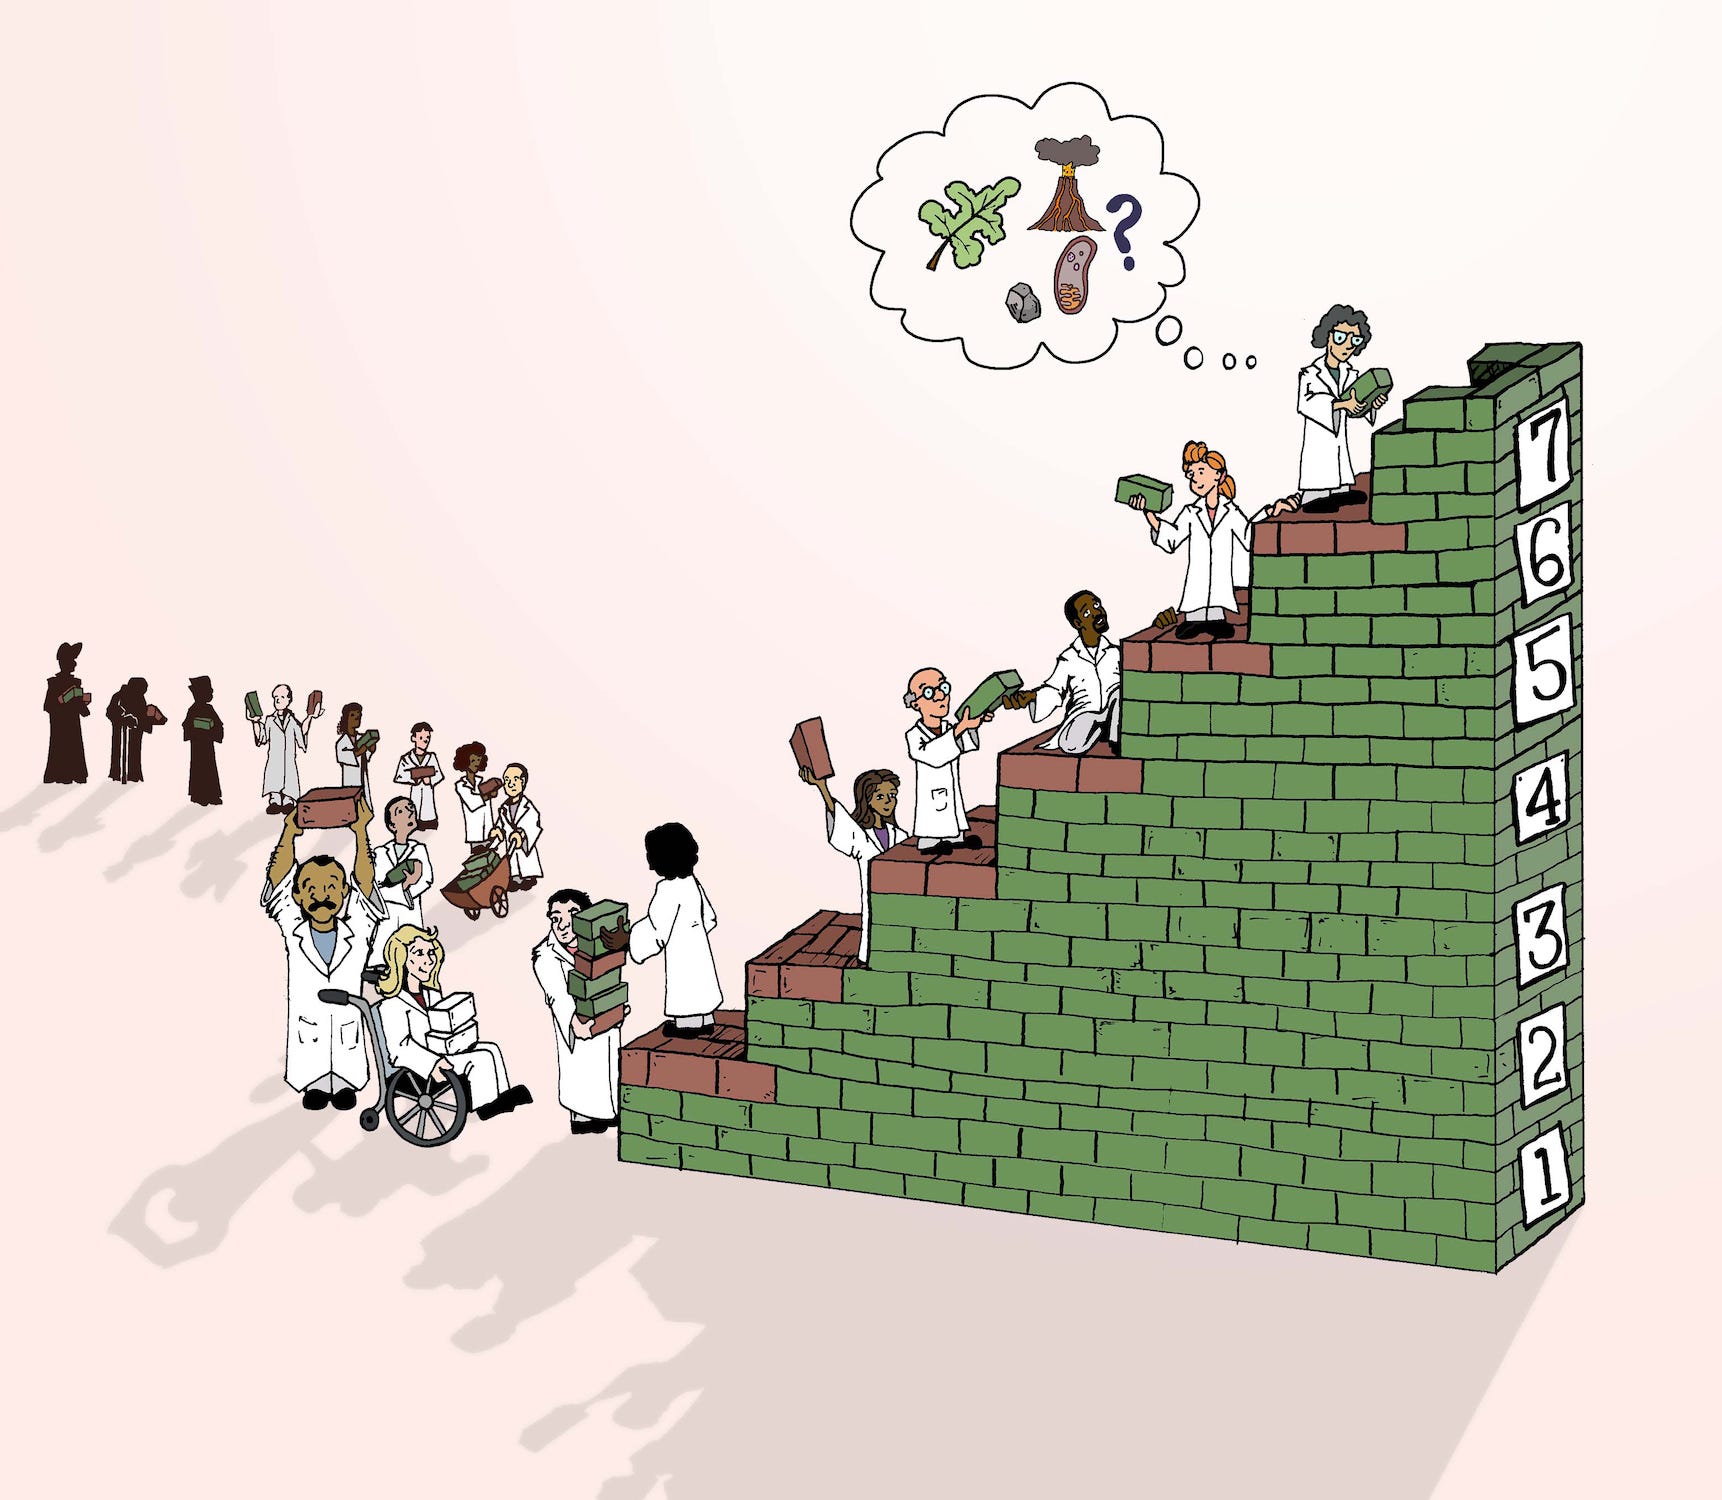 Der Illustrations-Cartoon zeigt Menschen in weißen Laborkitteln, die eine Treppe aus grünen Ziegelsteinen bauen, auf der die Nummern 1 bis 7 hinaufsteigen